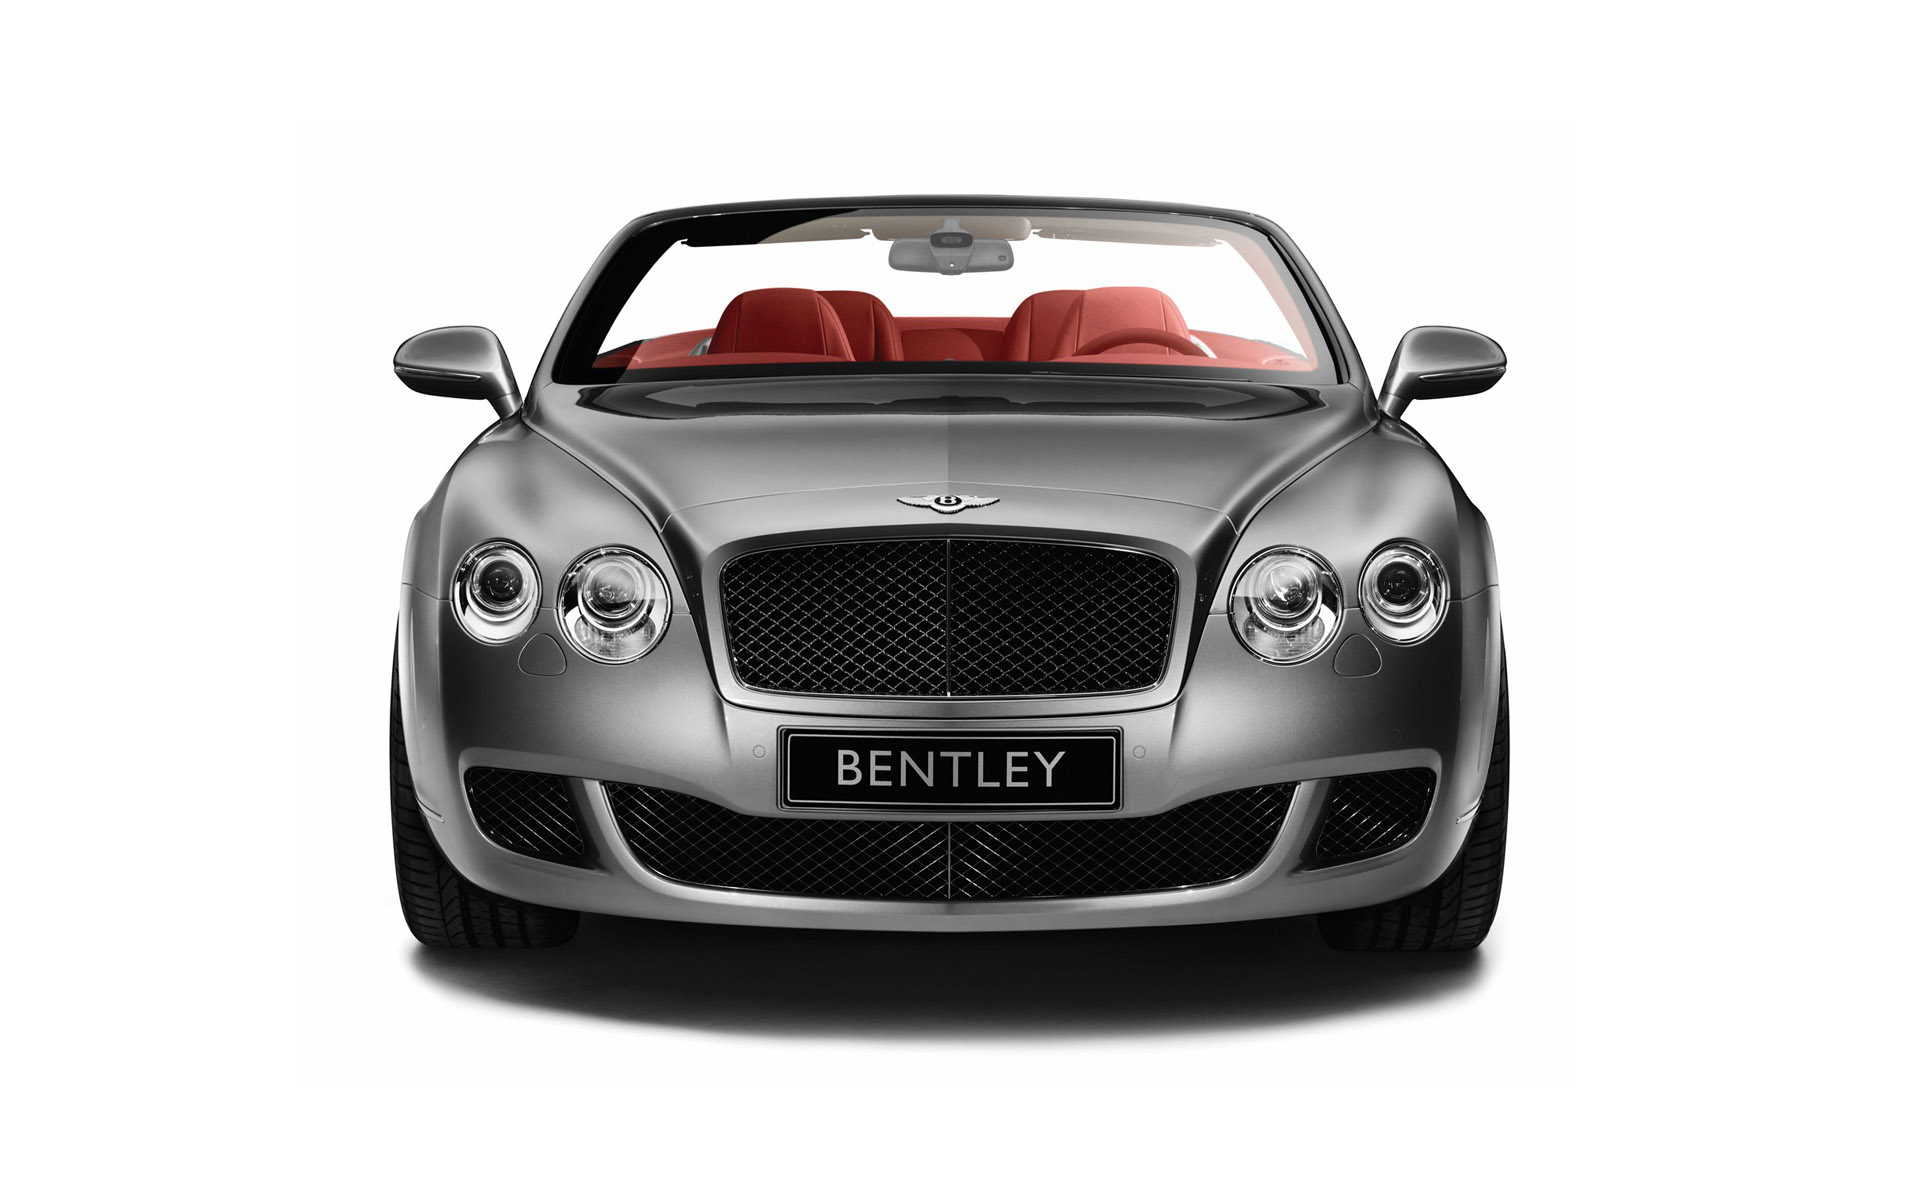 壁纸1920x1200Bentley宾利 1 20壁纸 汽车品牌 Bentley宾利 第一辑壁纸 汽车品牌 Bentley宾利 第一辑图片 汽车品牌 Bentley宾利 第一辑素材 汽车壁纸 汽车图库 汽车图片素材桌面壁纸